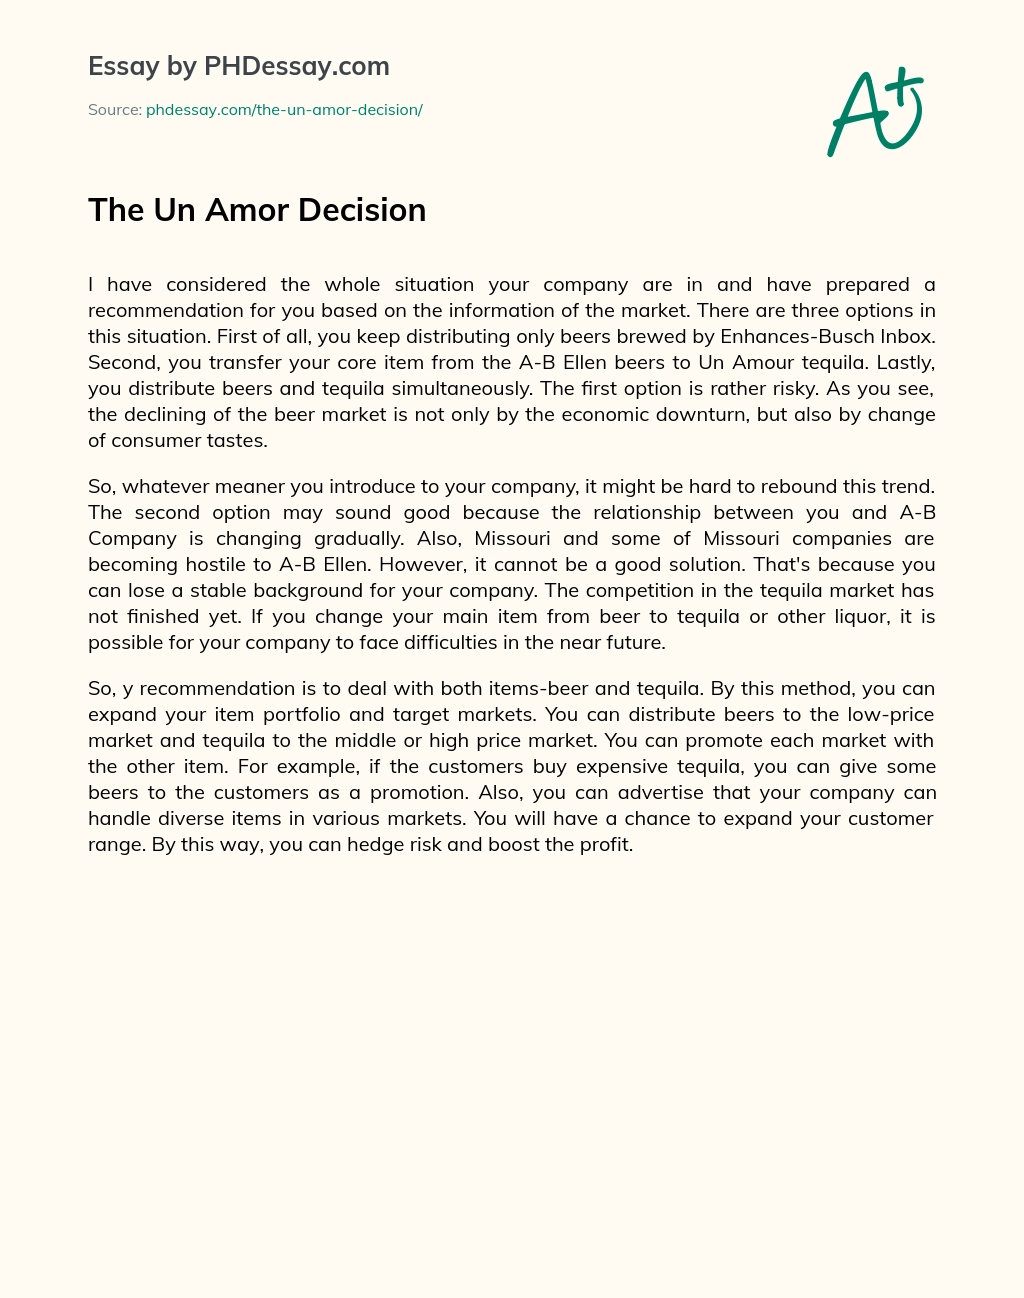 The Un Amor Decision essay